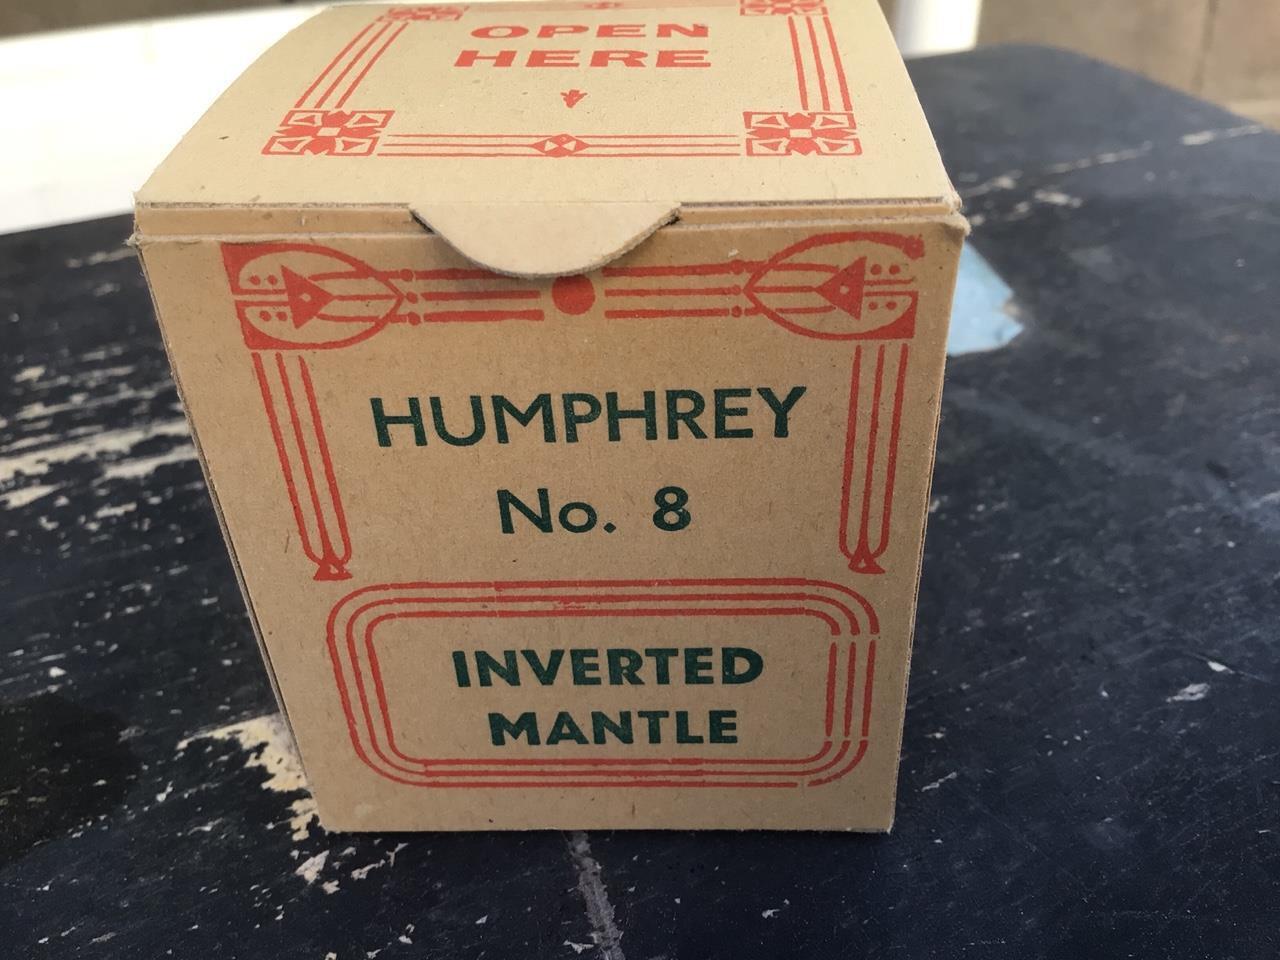 HUMPHREY NO.8 INVERTED PREFORMED MANTLE